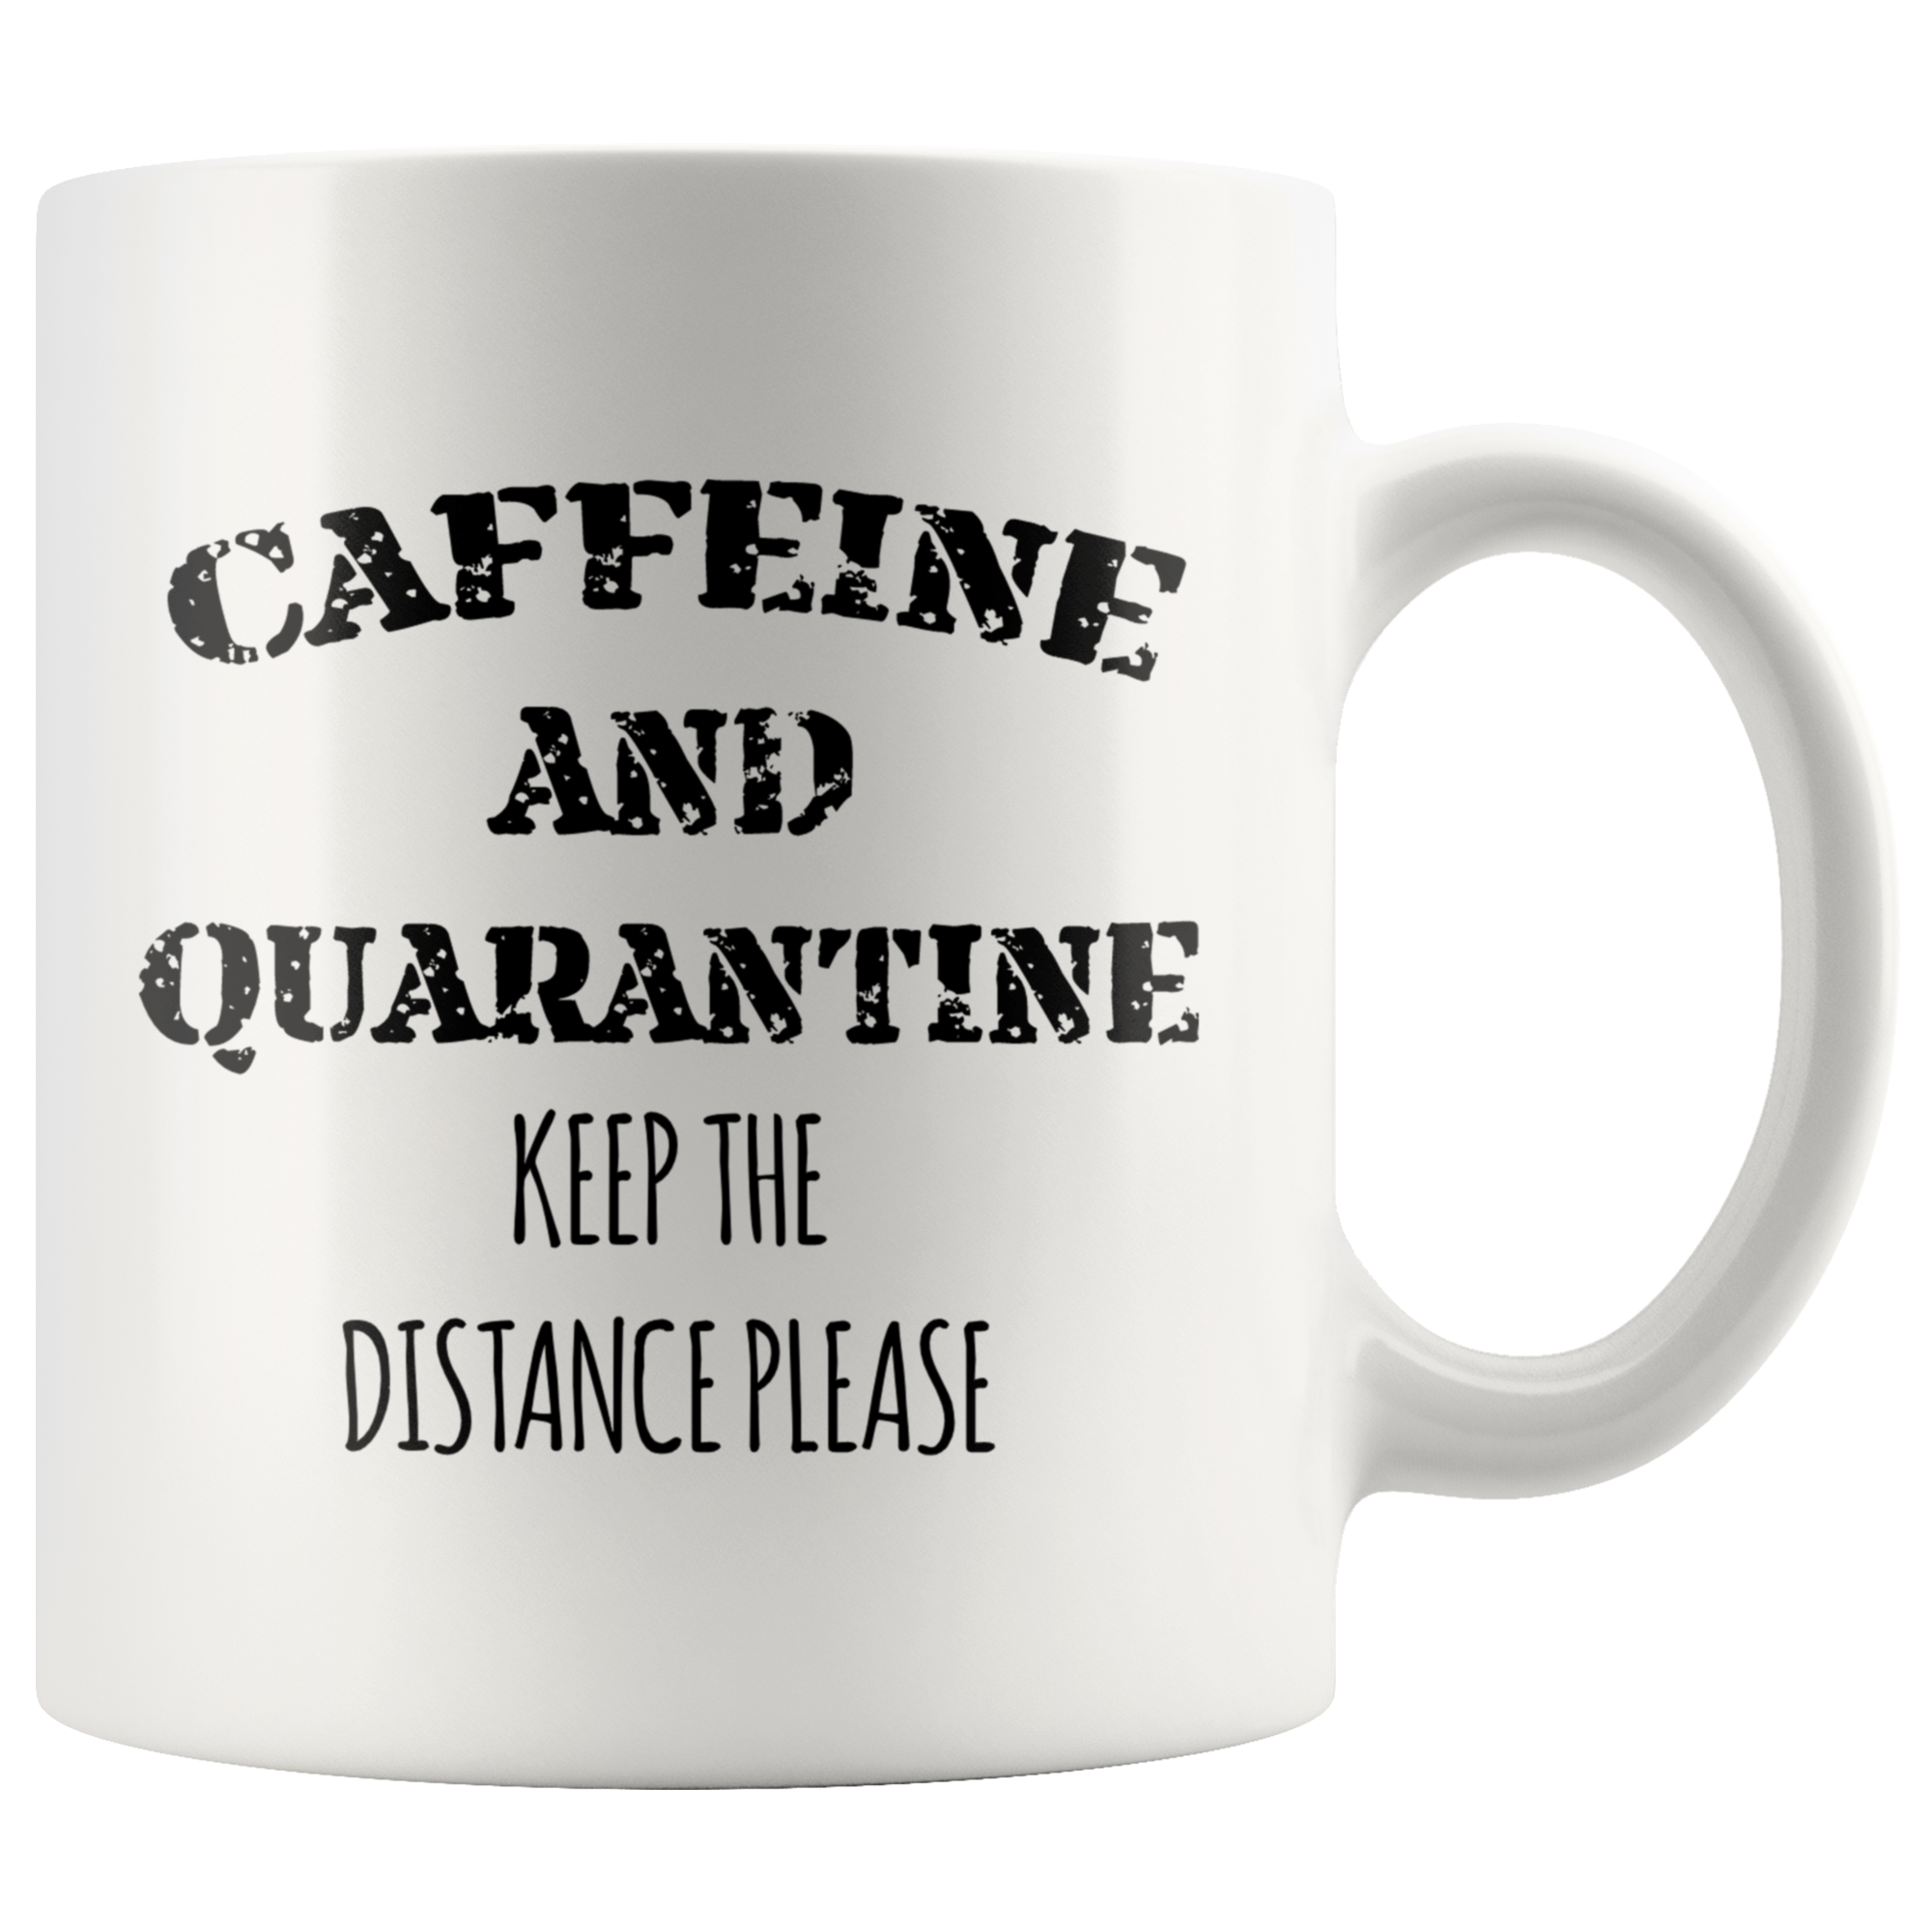 Caffeine and Quarantine Mug